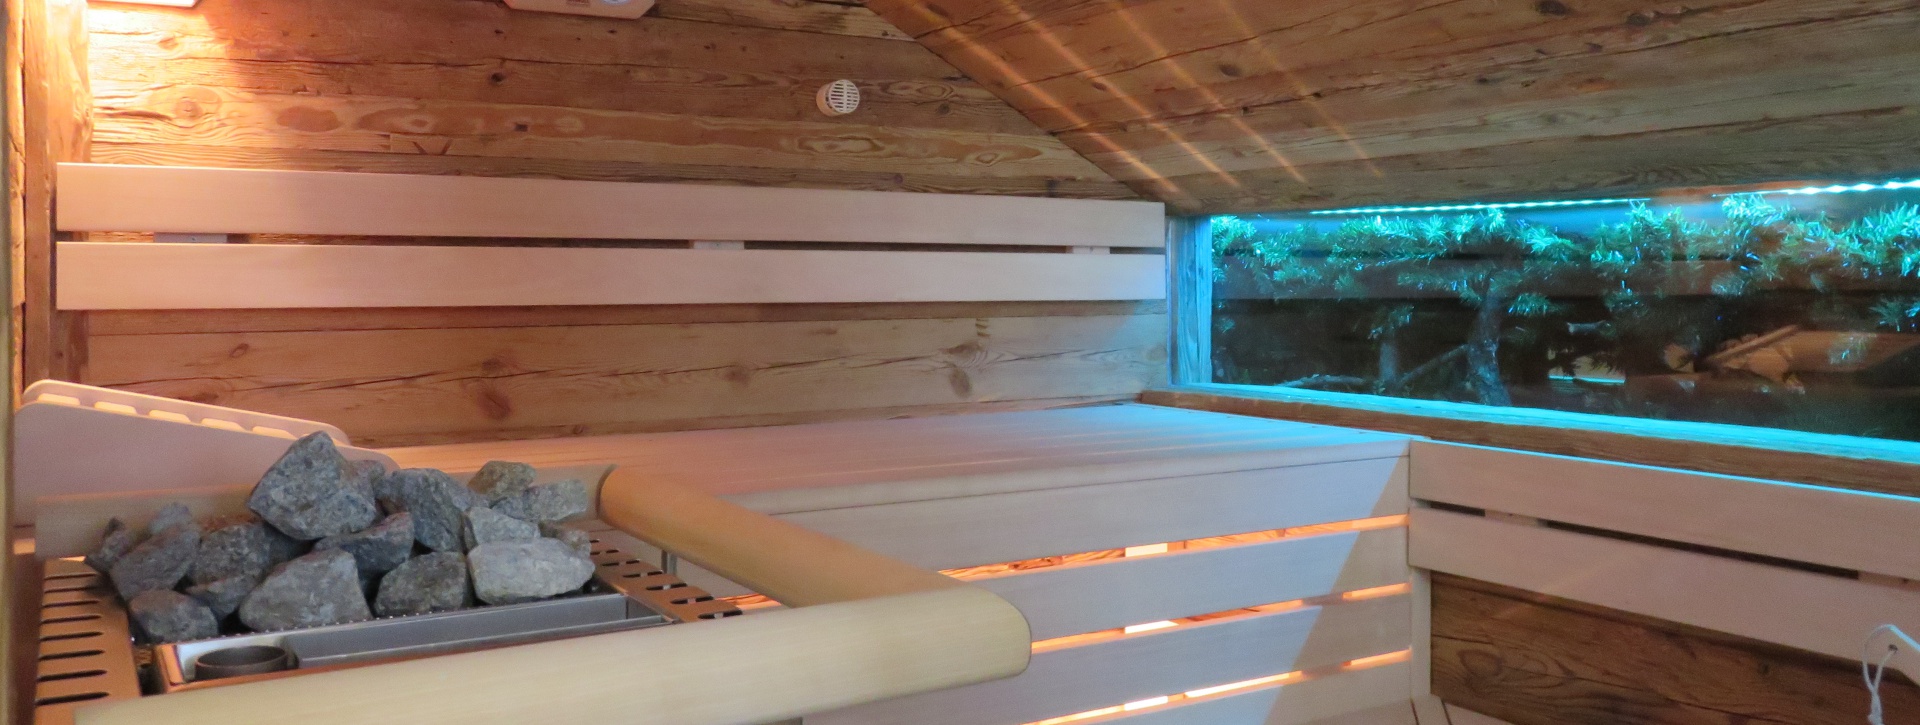 Sauna in der Shania Residence Ferienwohnung in Übersee, Wellness, Sauna, Bäder, Therme im Chiemgau